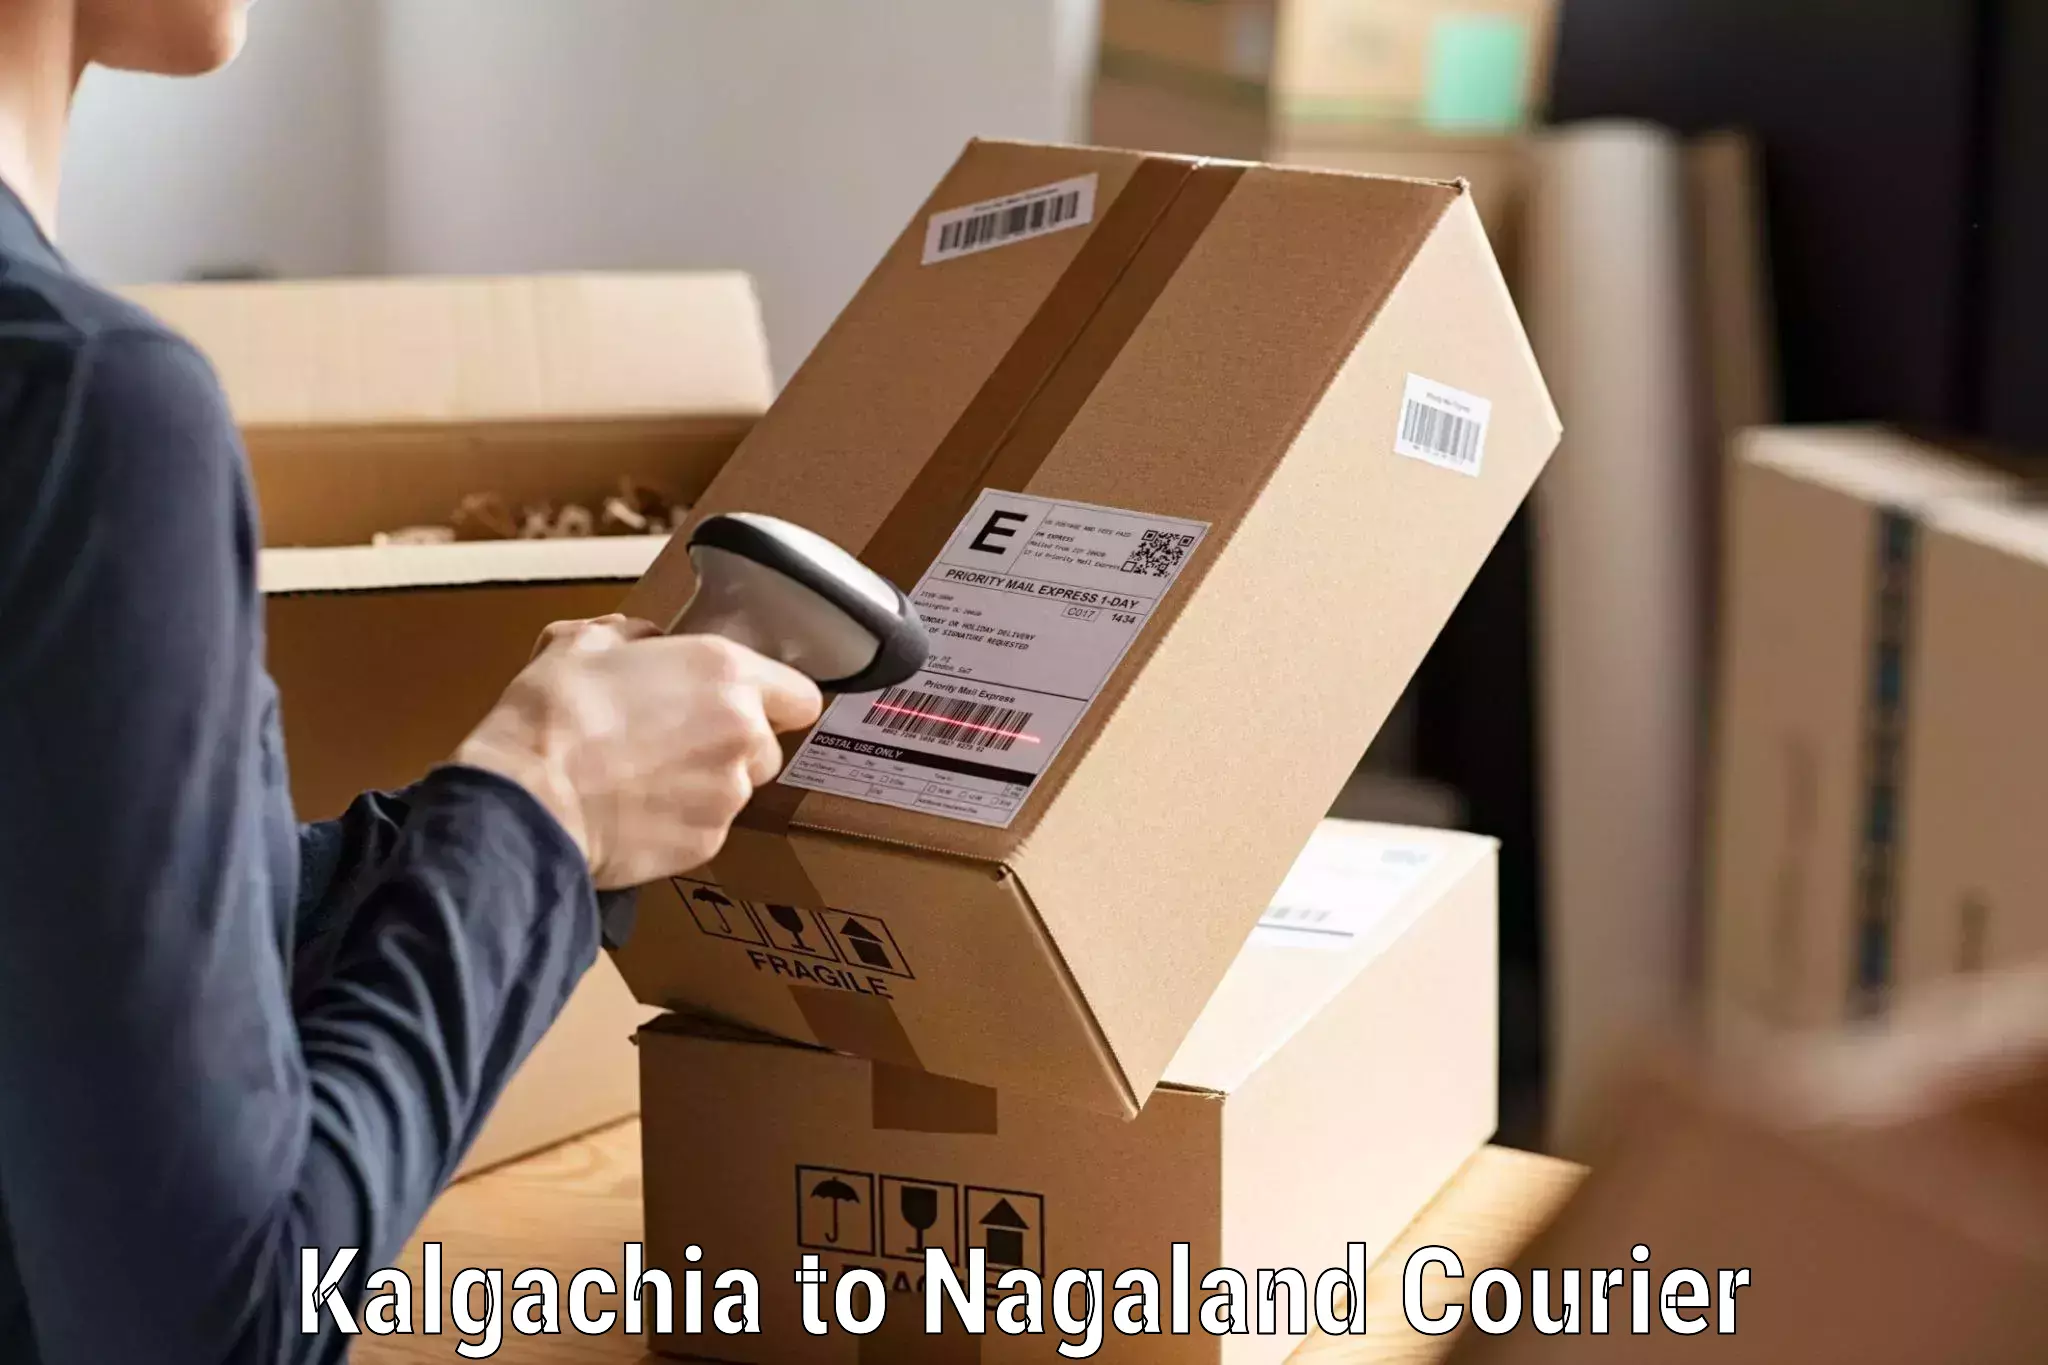 Reliable courier service Kalgachia to Chumukedima